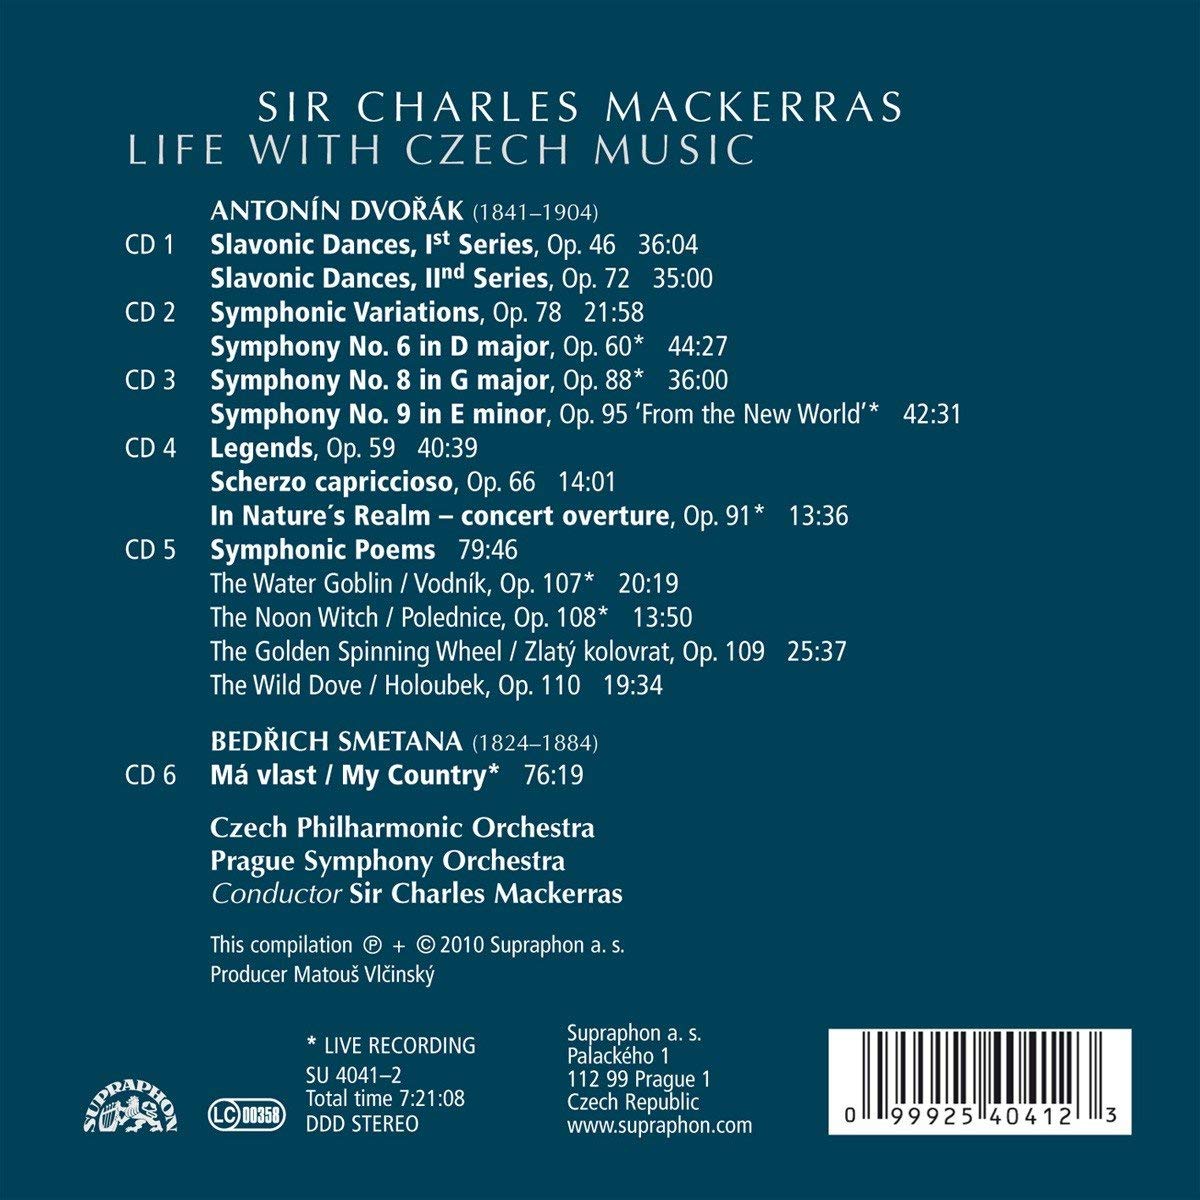 SIR CHARLES MACKERRAS - Life with Czech Music - Dvořák: Tańce słowiańskie, symfonie nr 6, 8 & 9, Poematy symf., Smetana: Moja ojczyzna - slide-1